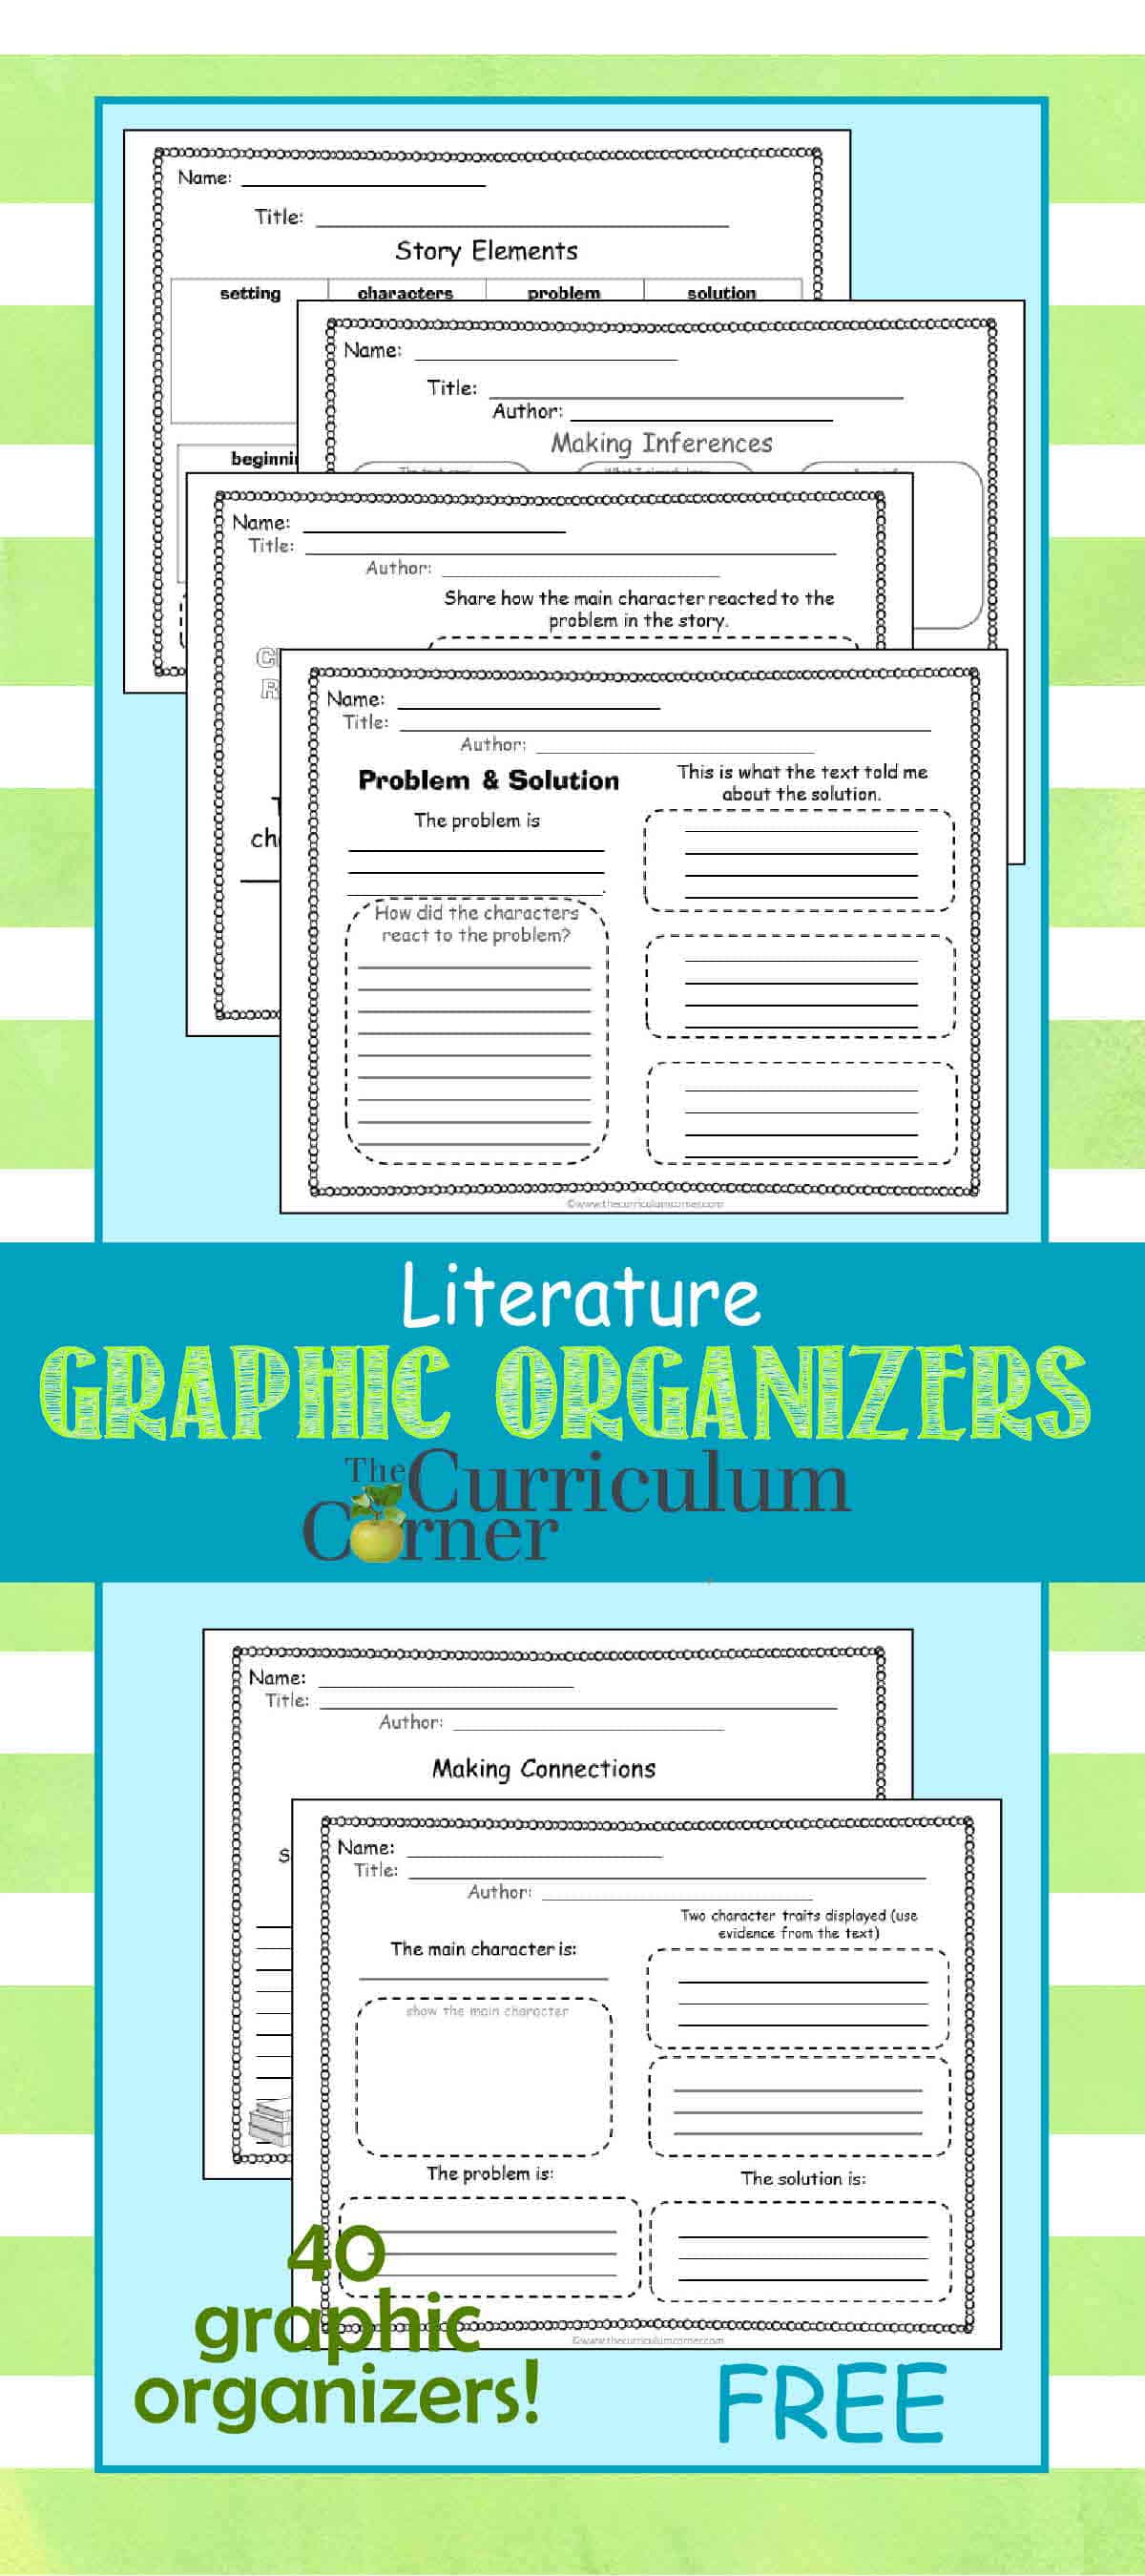 Literature Graphic Organizers - The Curriculum Corner 4-5-6